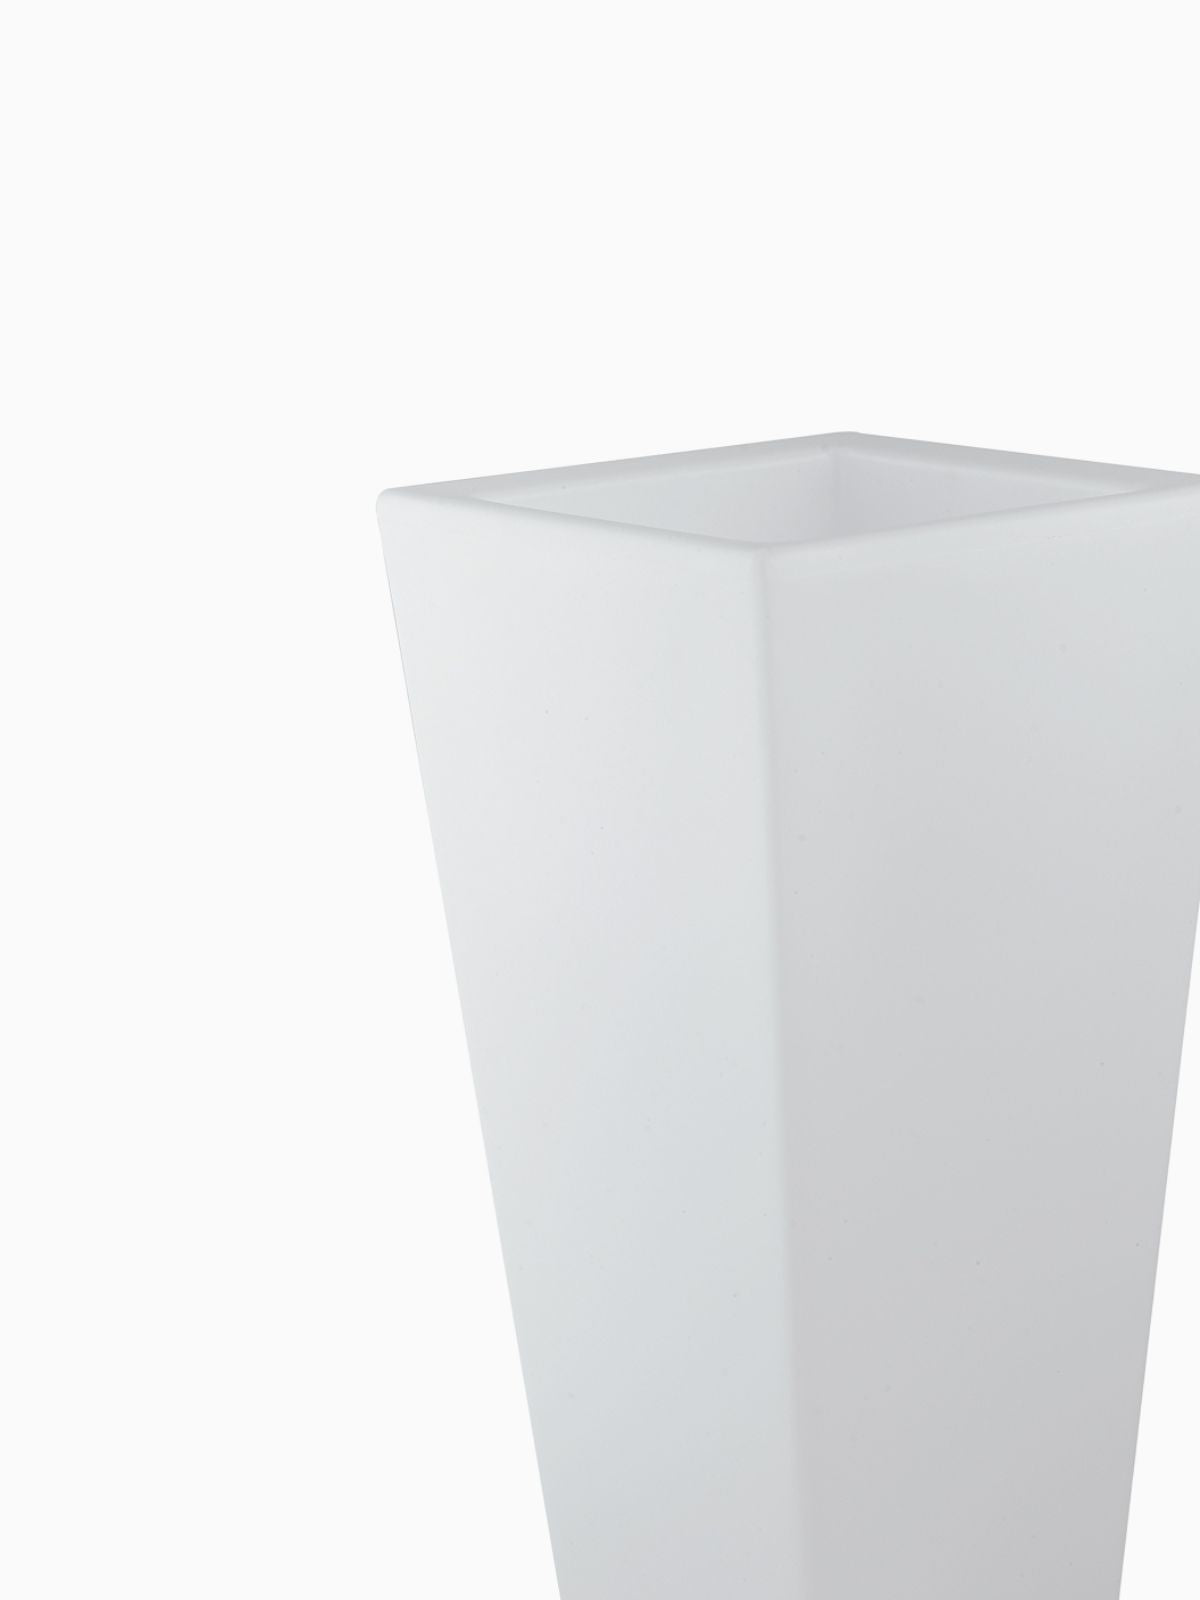 Vaso da esterno quadrato a LED Geco in polietilene, colore bianco 60 cm.-2